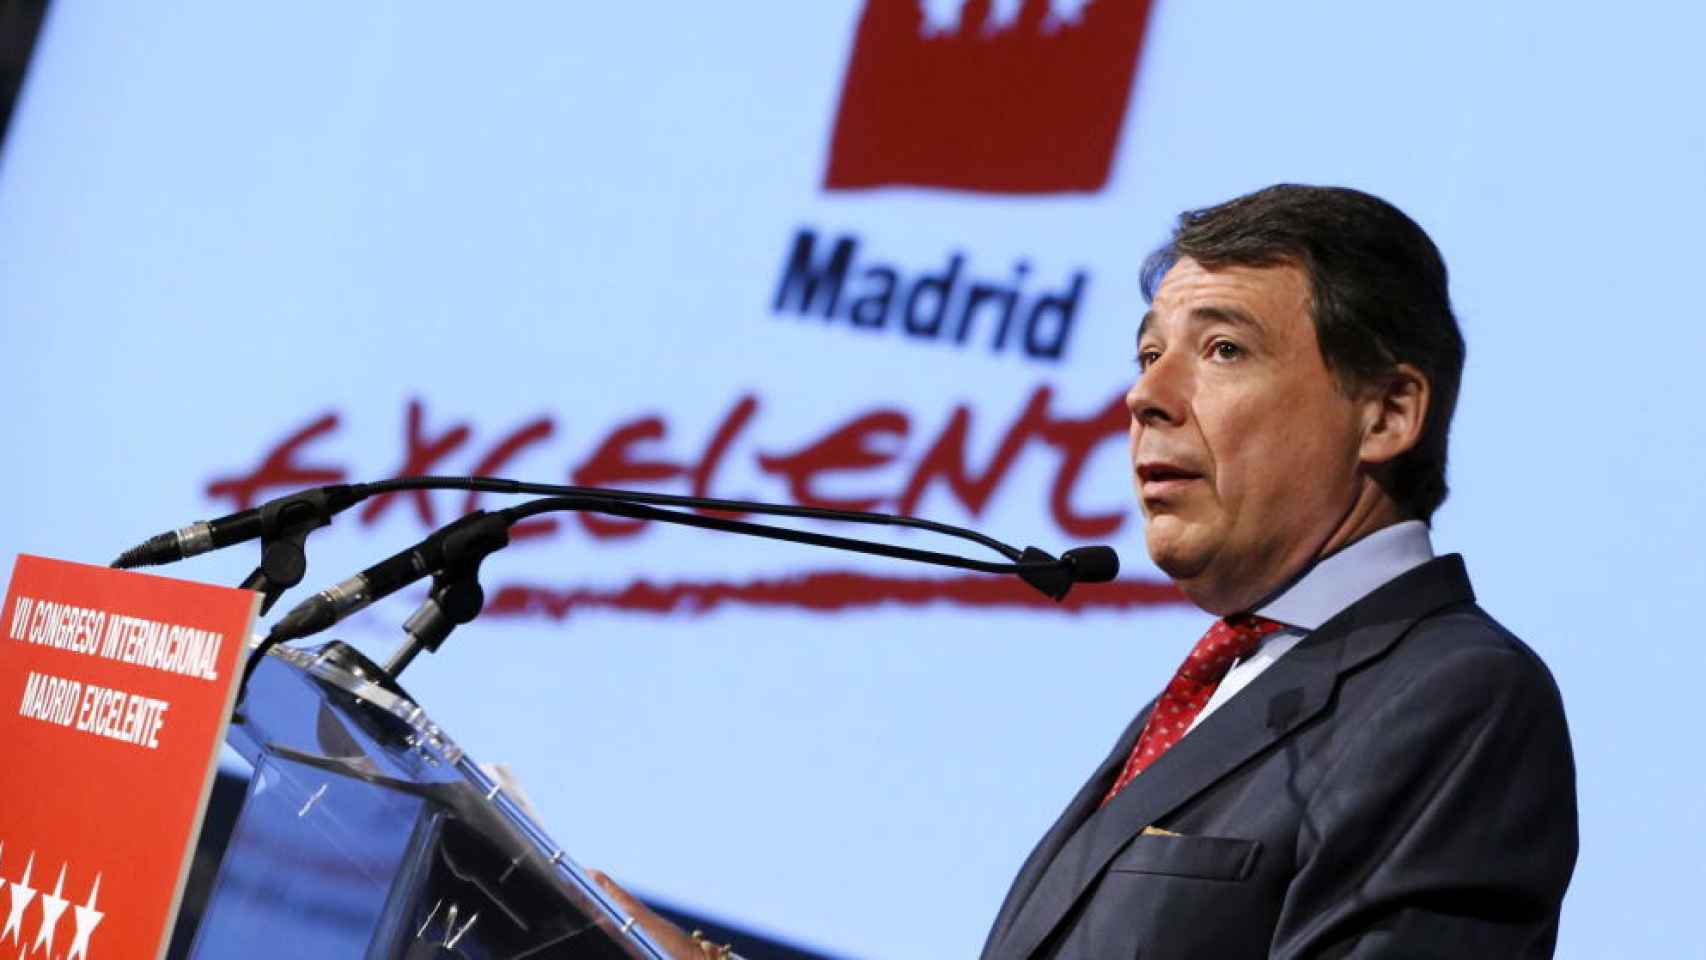 El expresidente de la Comunidad de Madrid Ignacio González